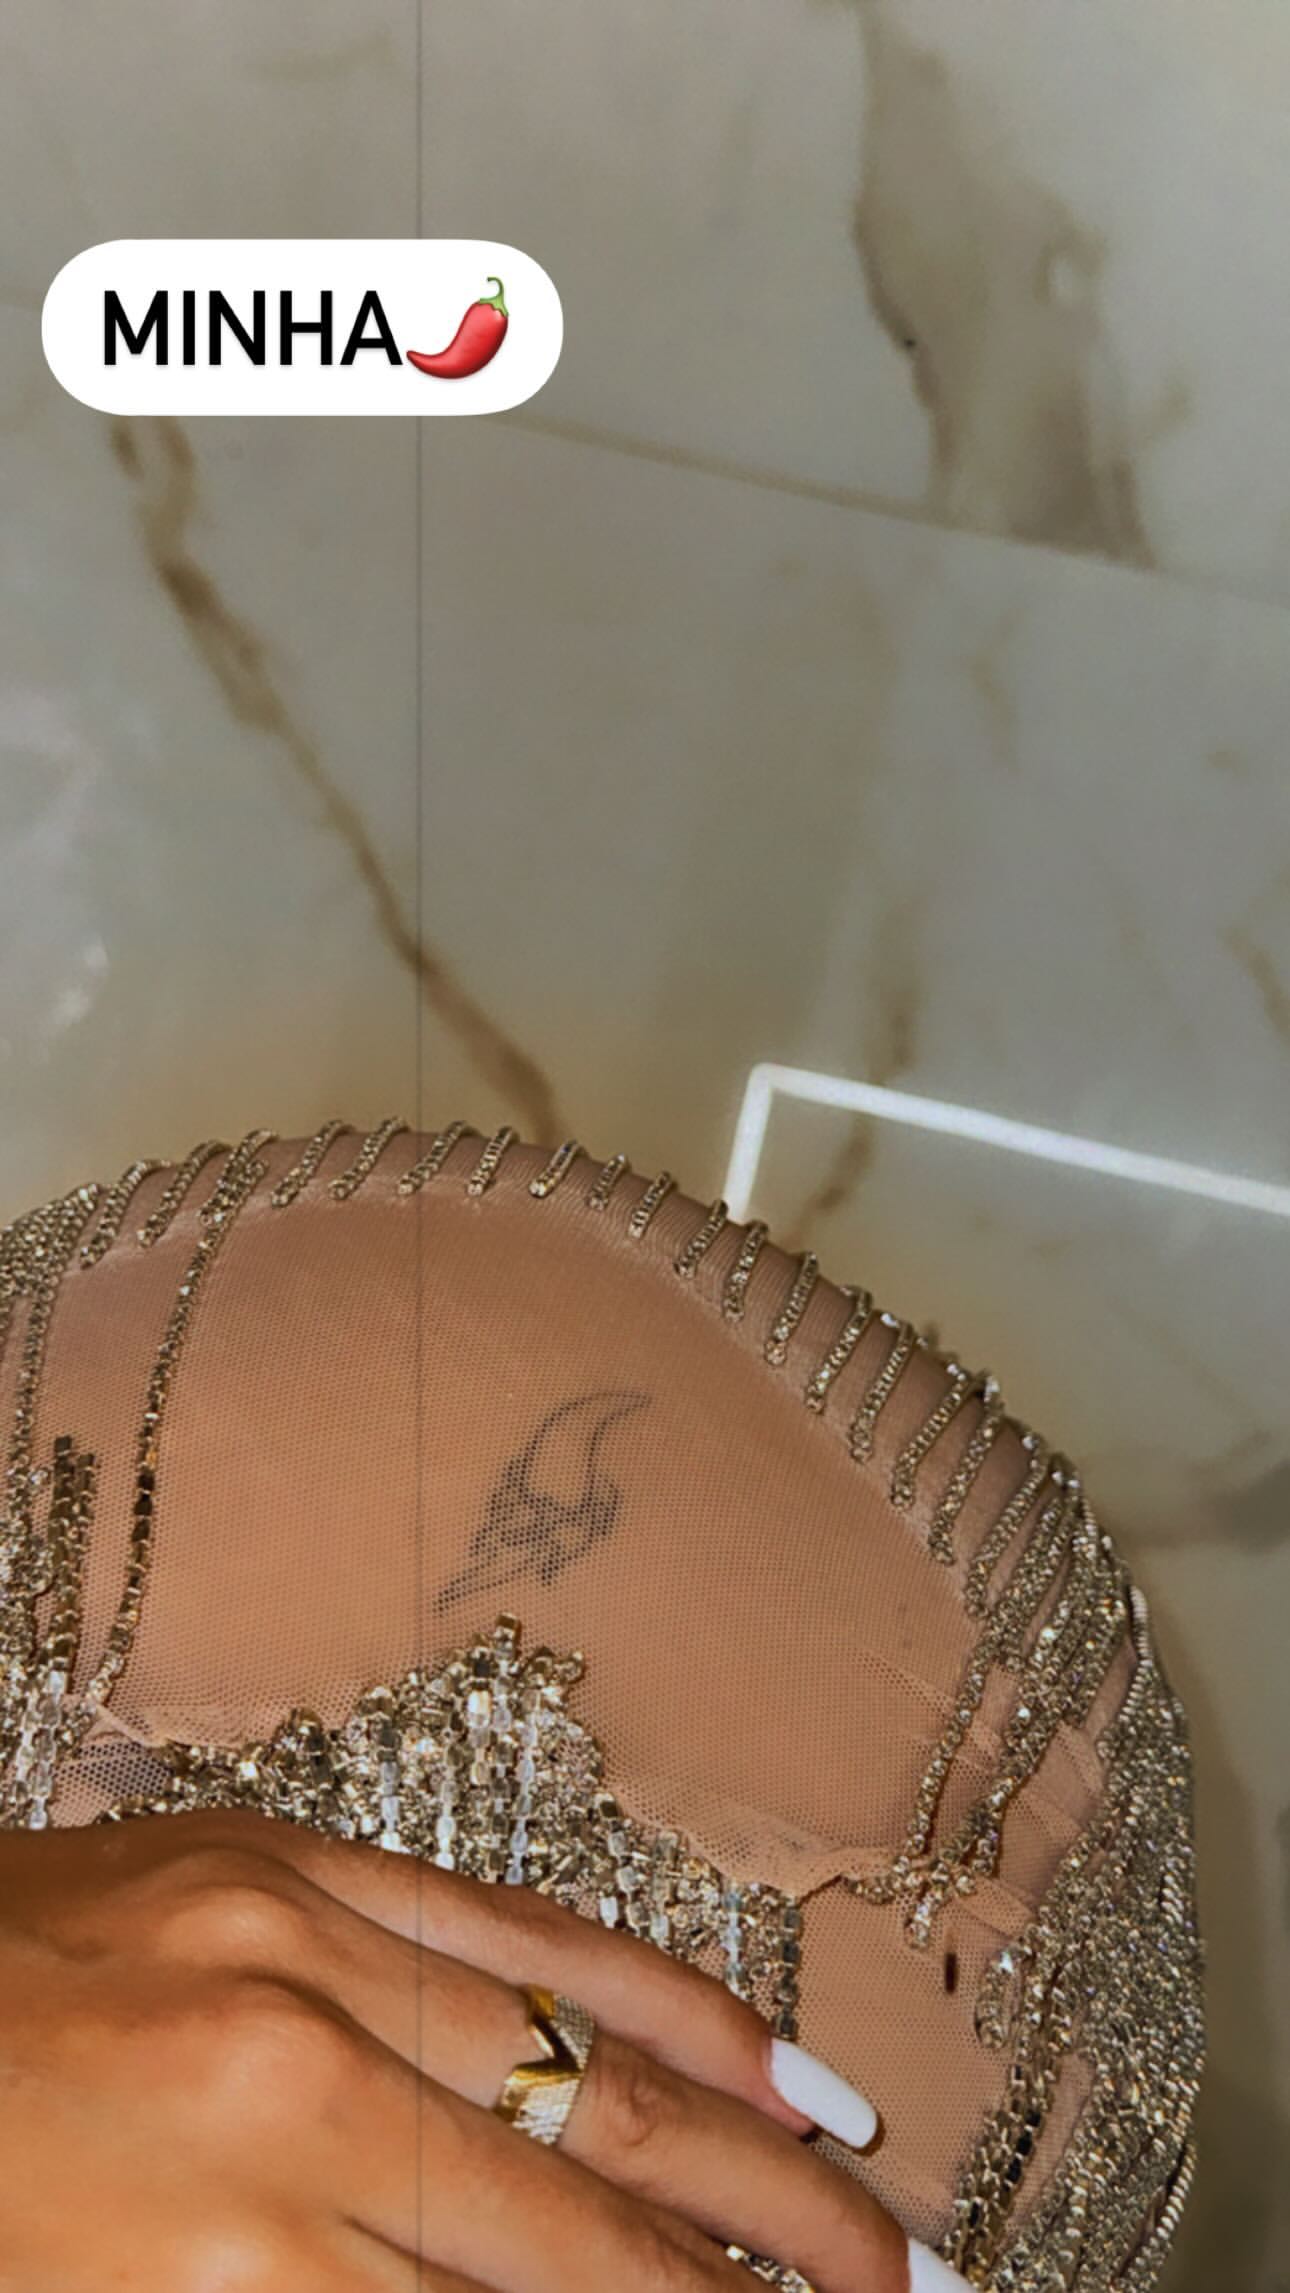 Bia Miranda exibiu tatuagem íntima em vestido com transparência - Foto: Reprodução/ Instagram@biamiranda